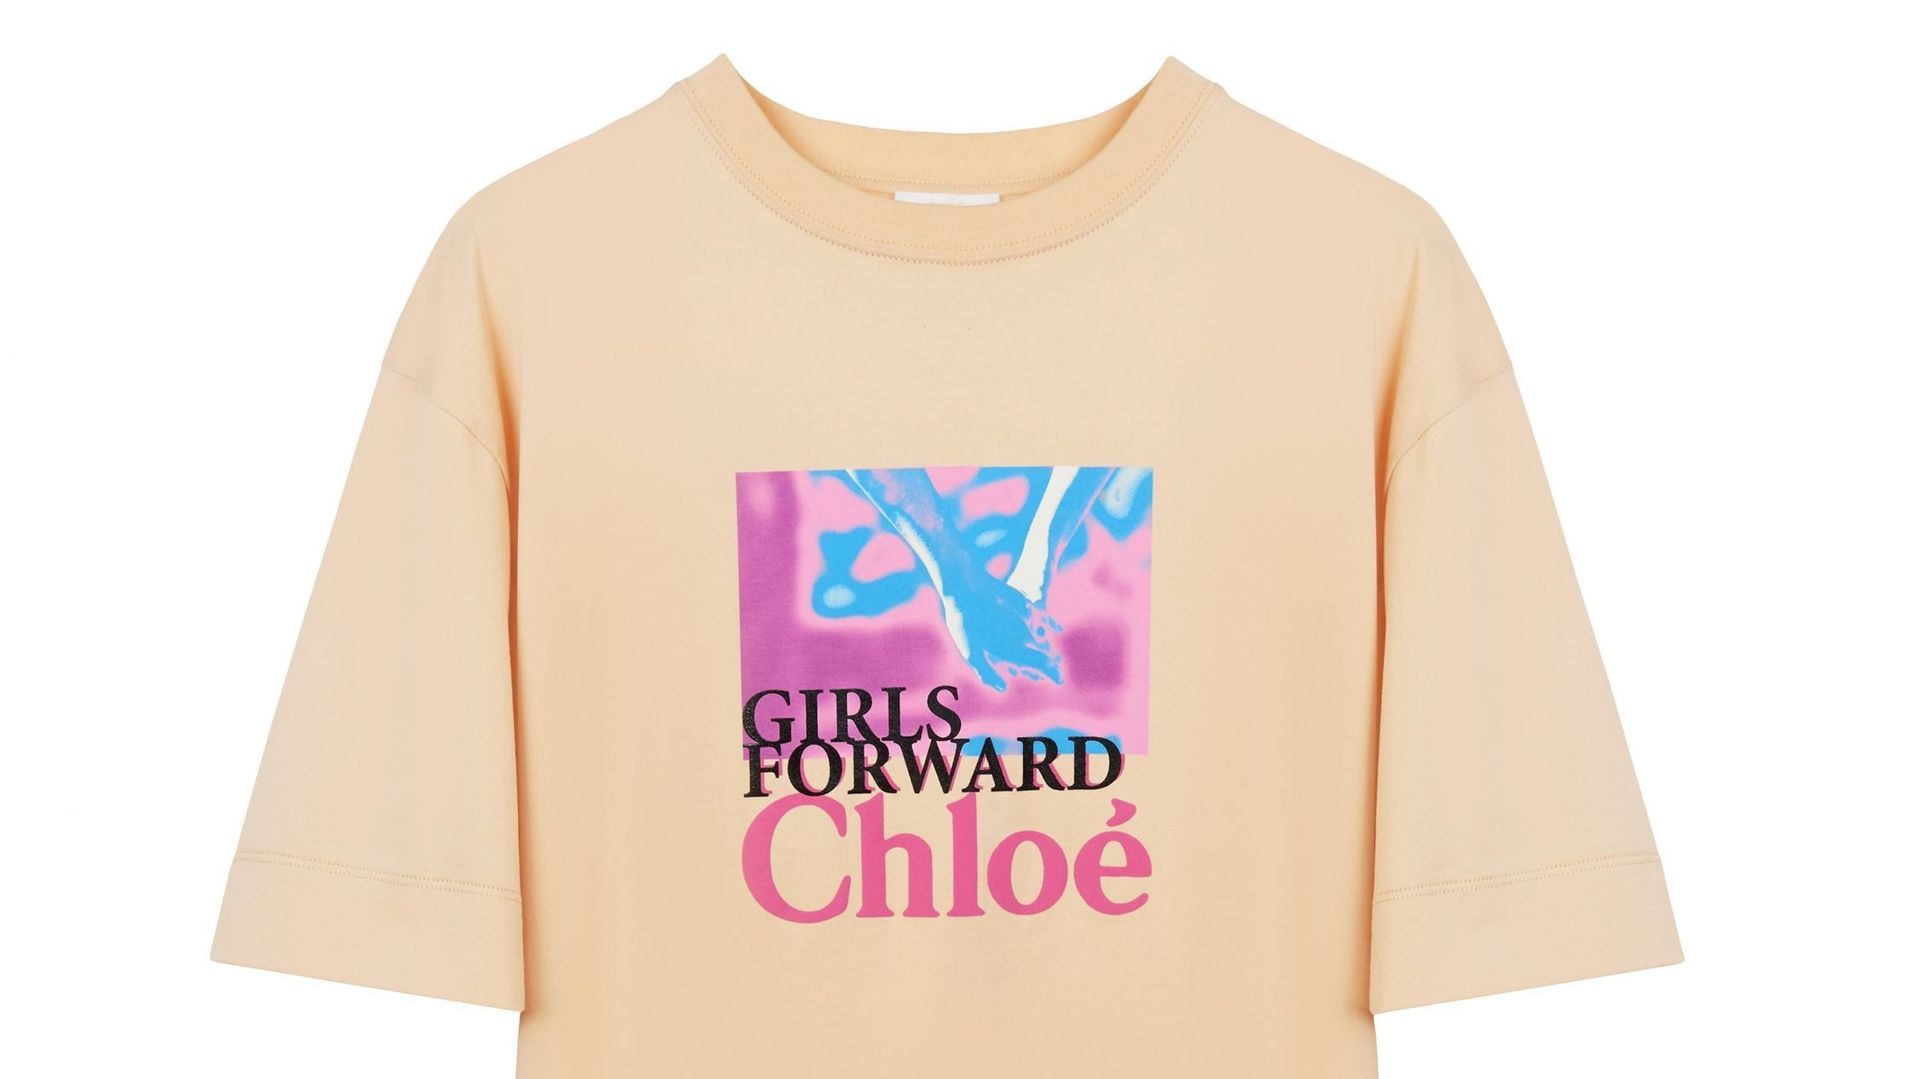 Le T-shirt "Girls Forward" de Chloé pour soutenir les programmes de l'Unicef en faveur de l'égalité des sexes.